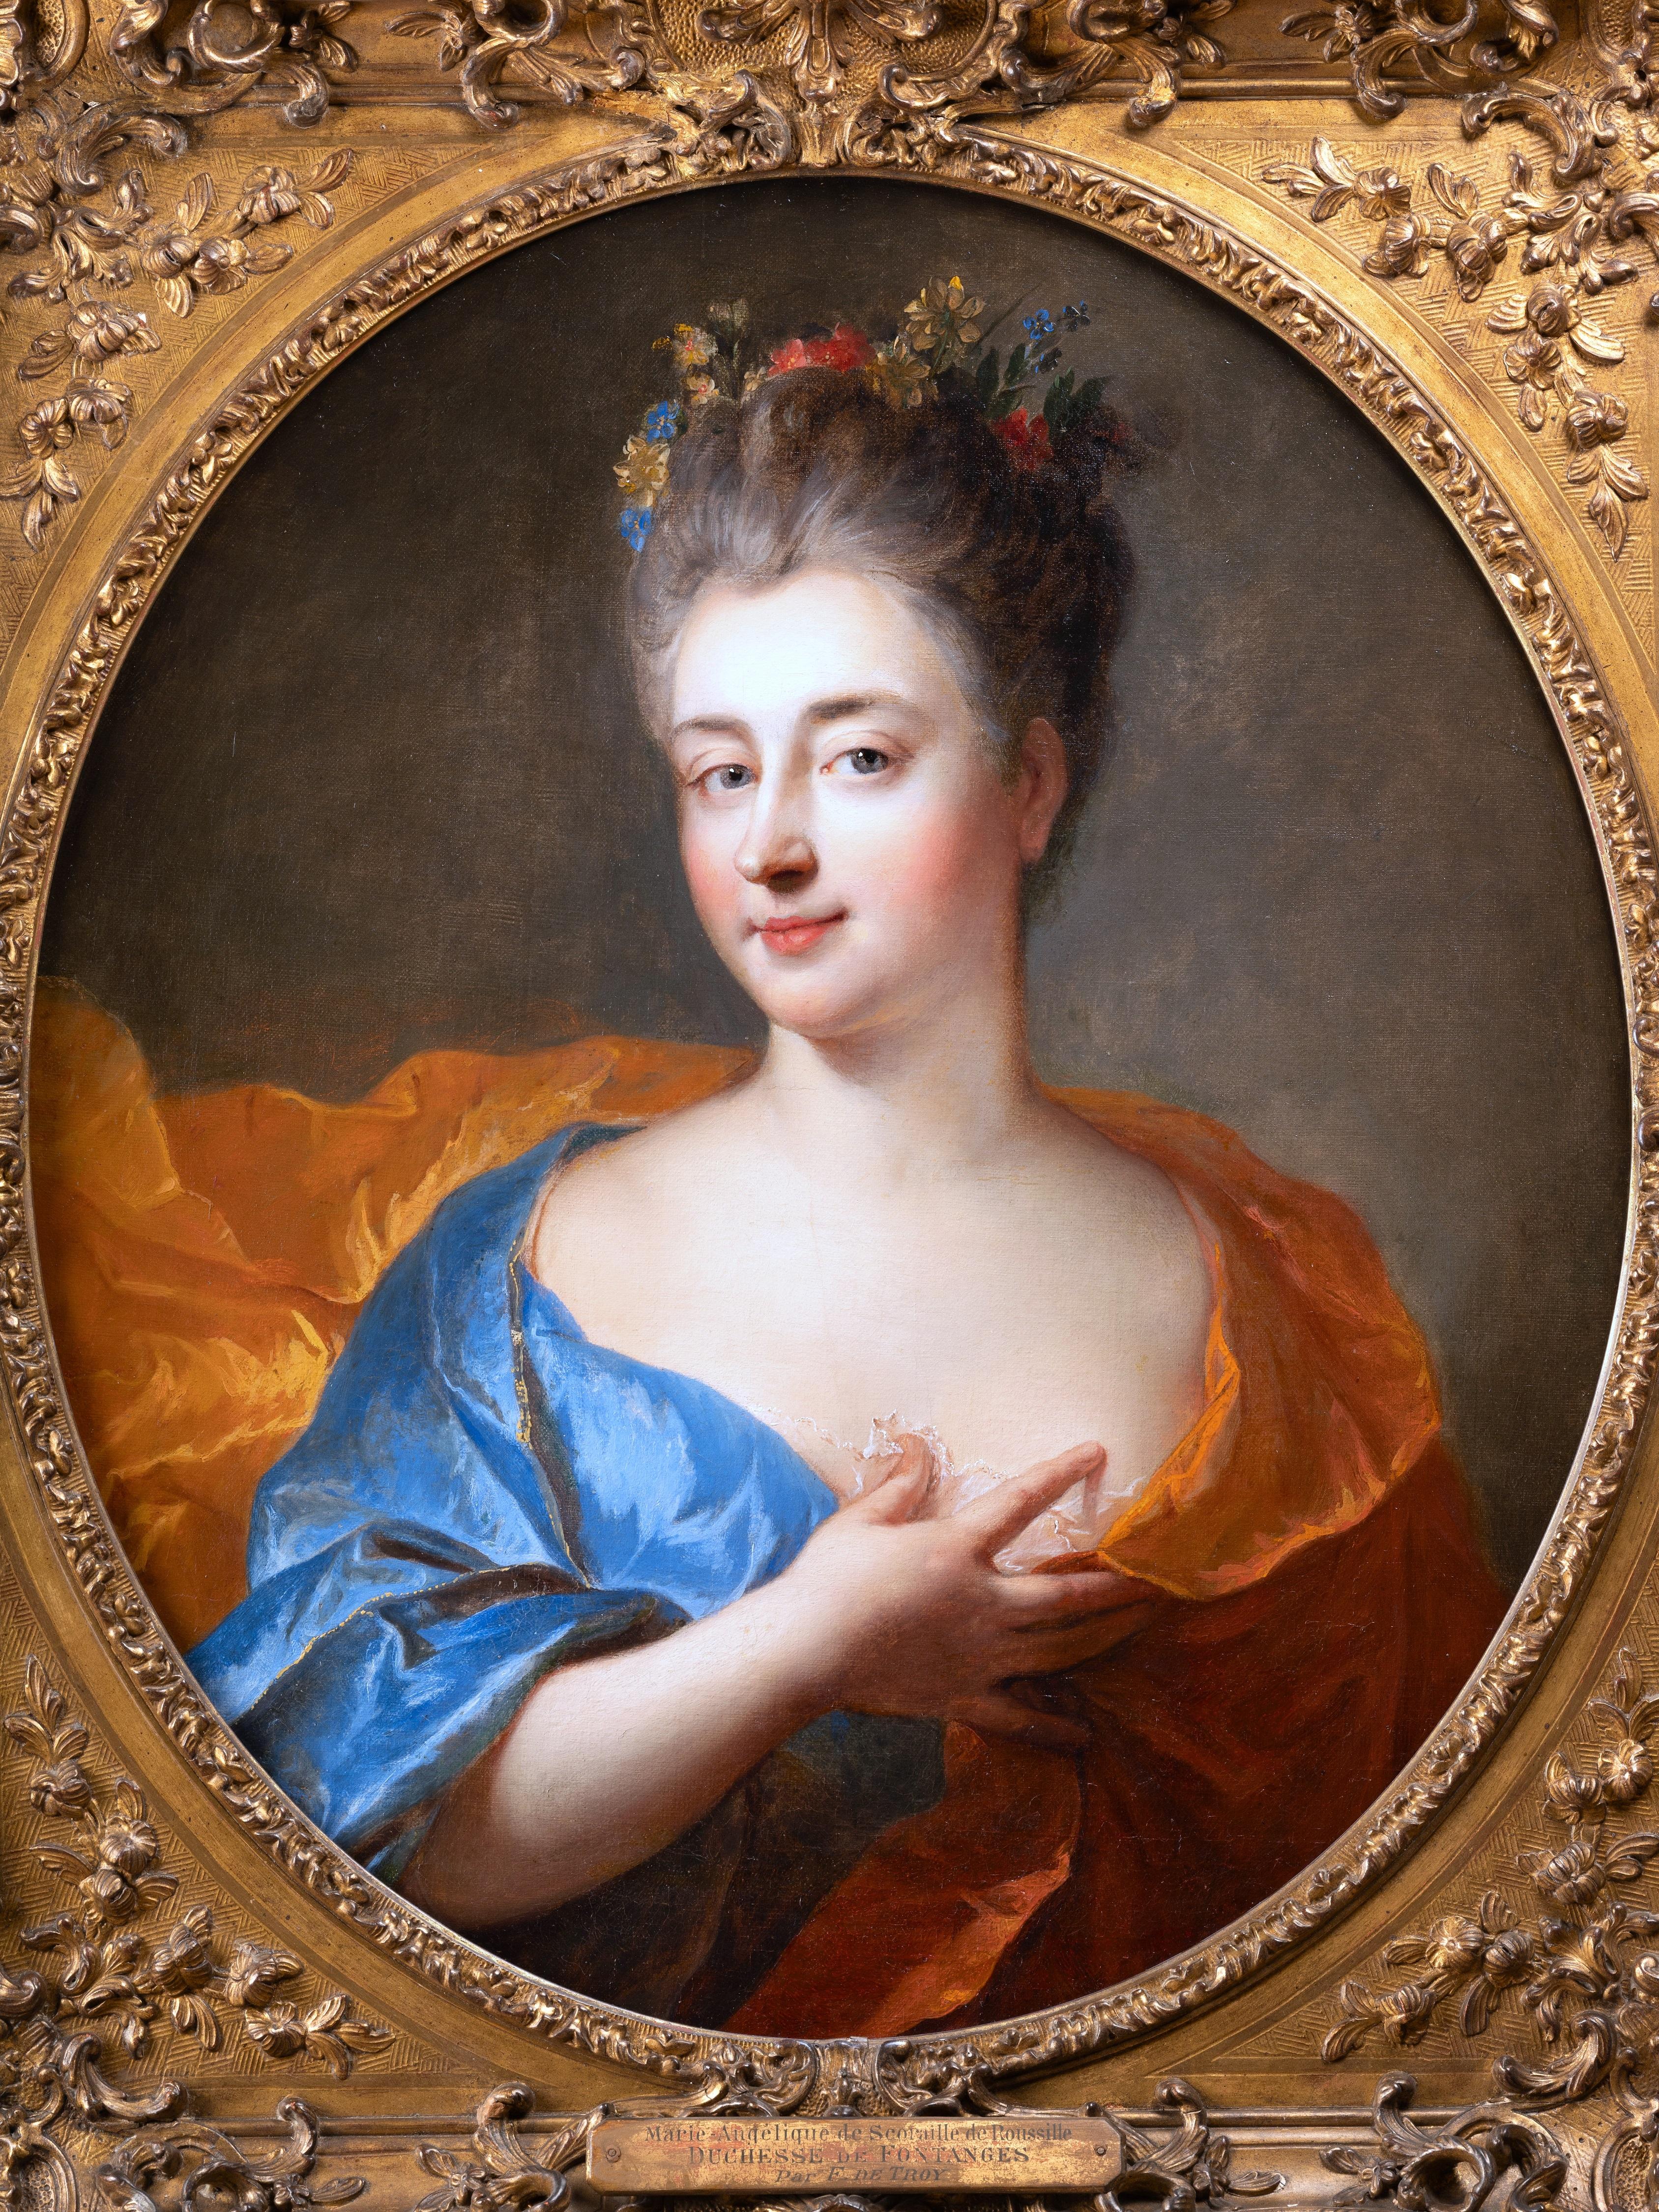 18th century French - Portrait of Duchesse de Fontanges by François de Troy - Painting by François de Troy (Toulouse 1645 - Paris 1730)